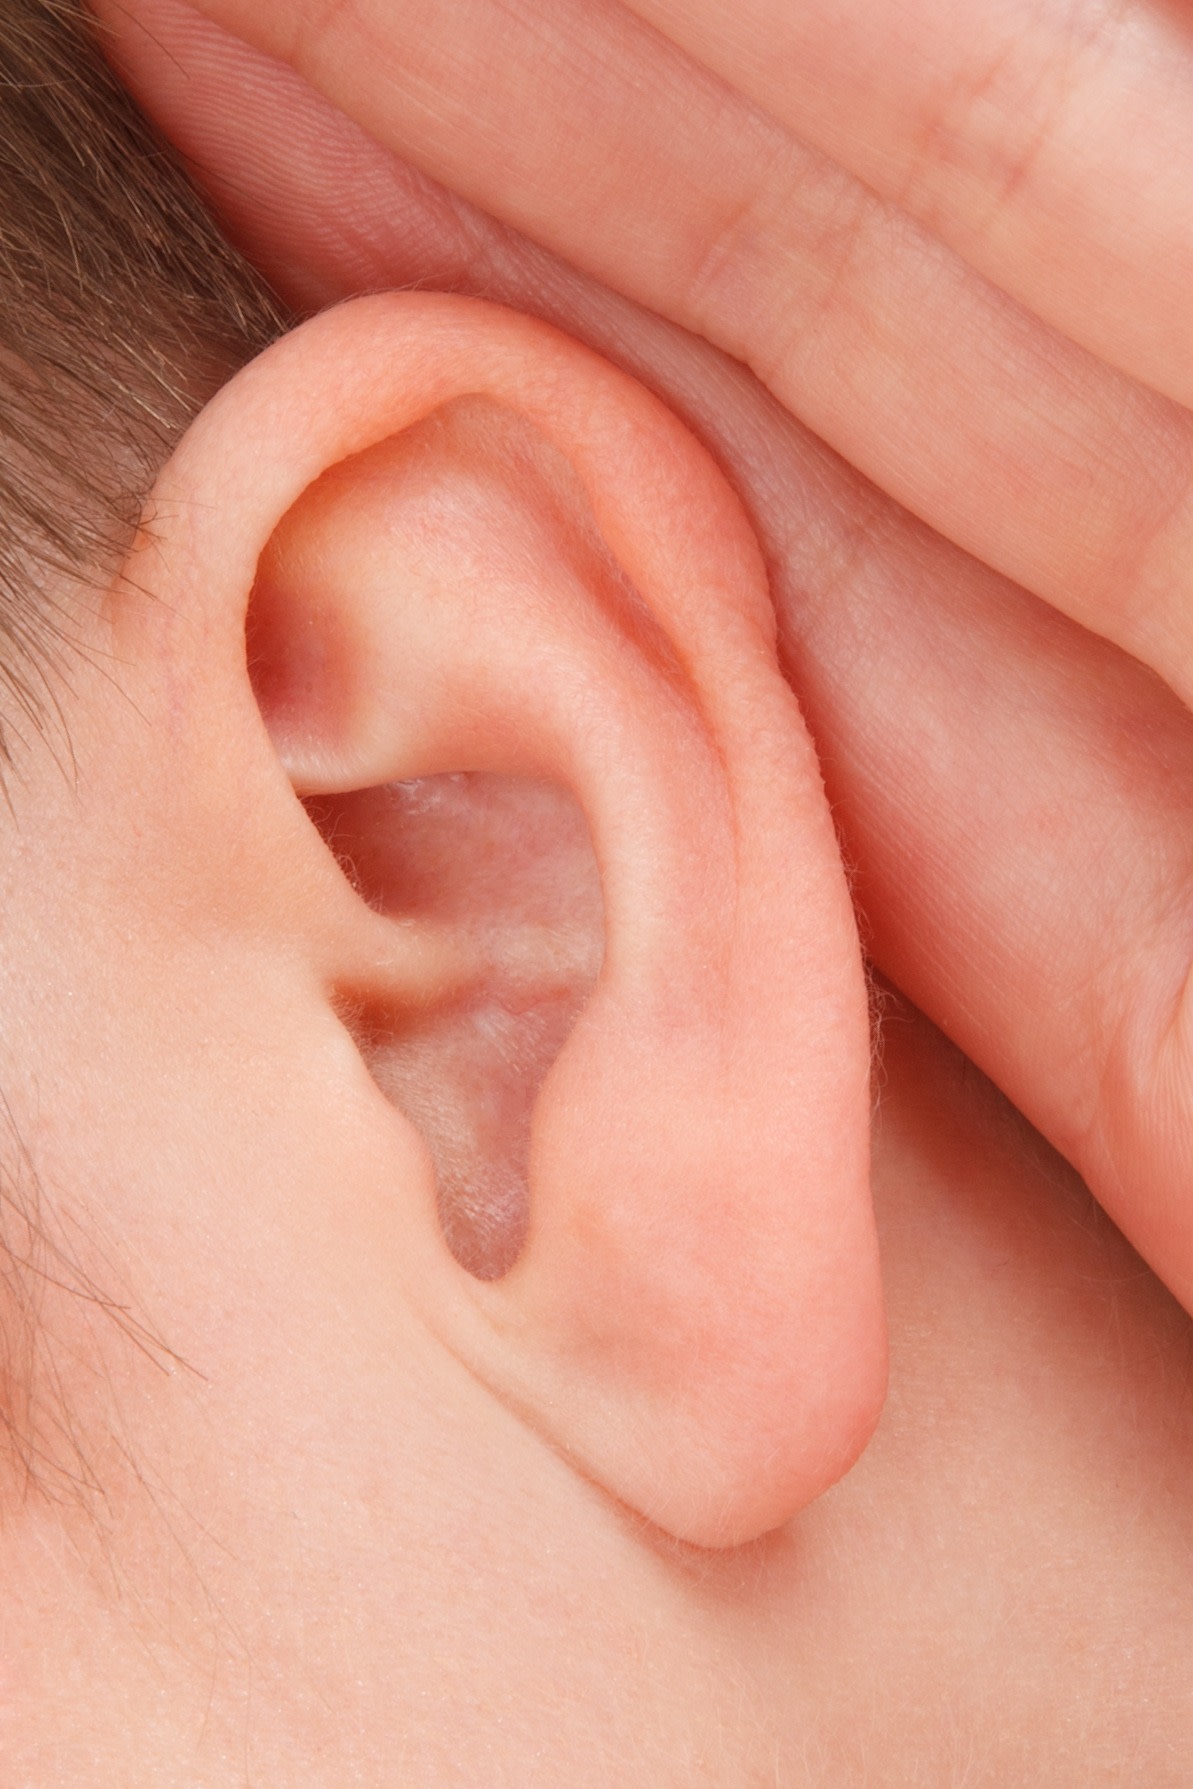 jak-poprawic-sluch-domowe-sposoby